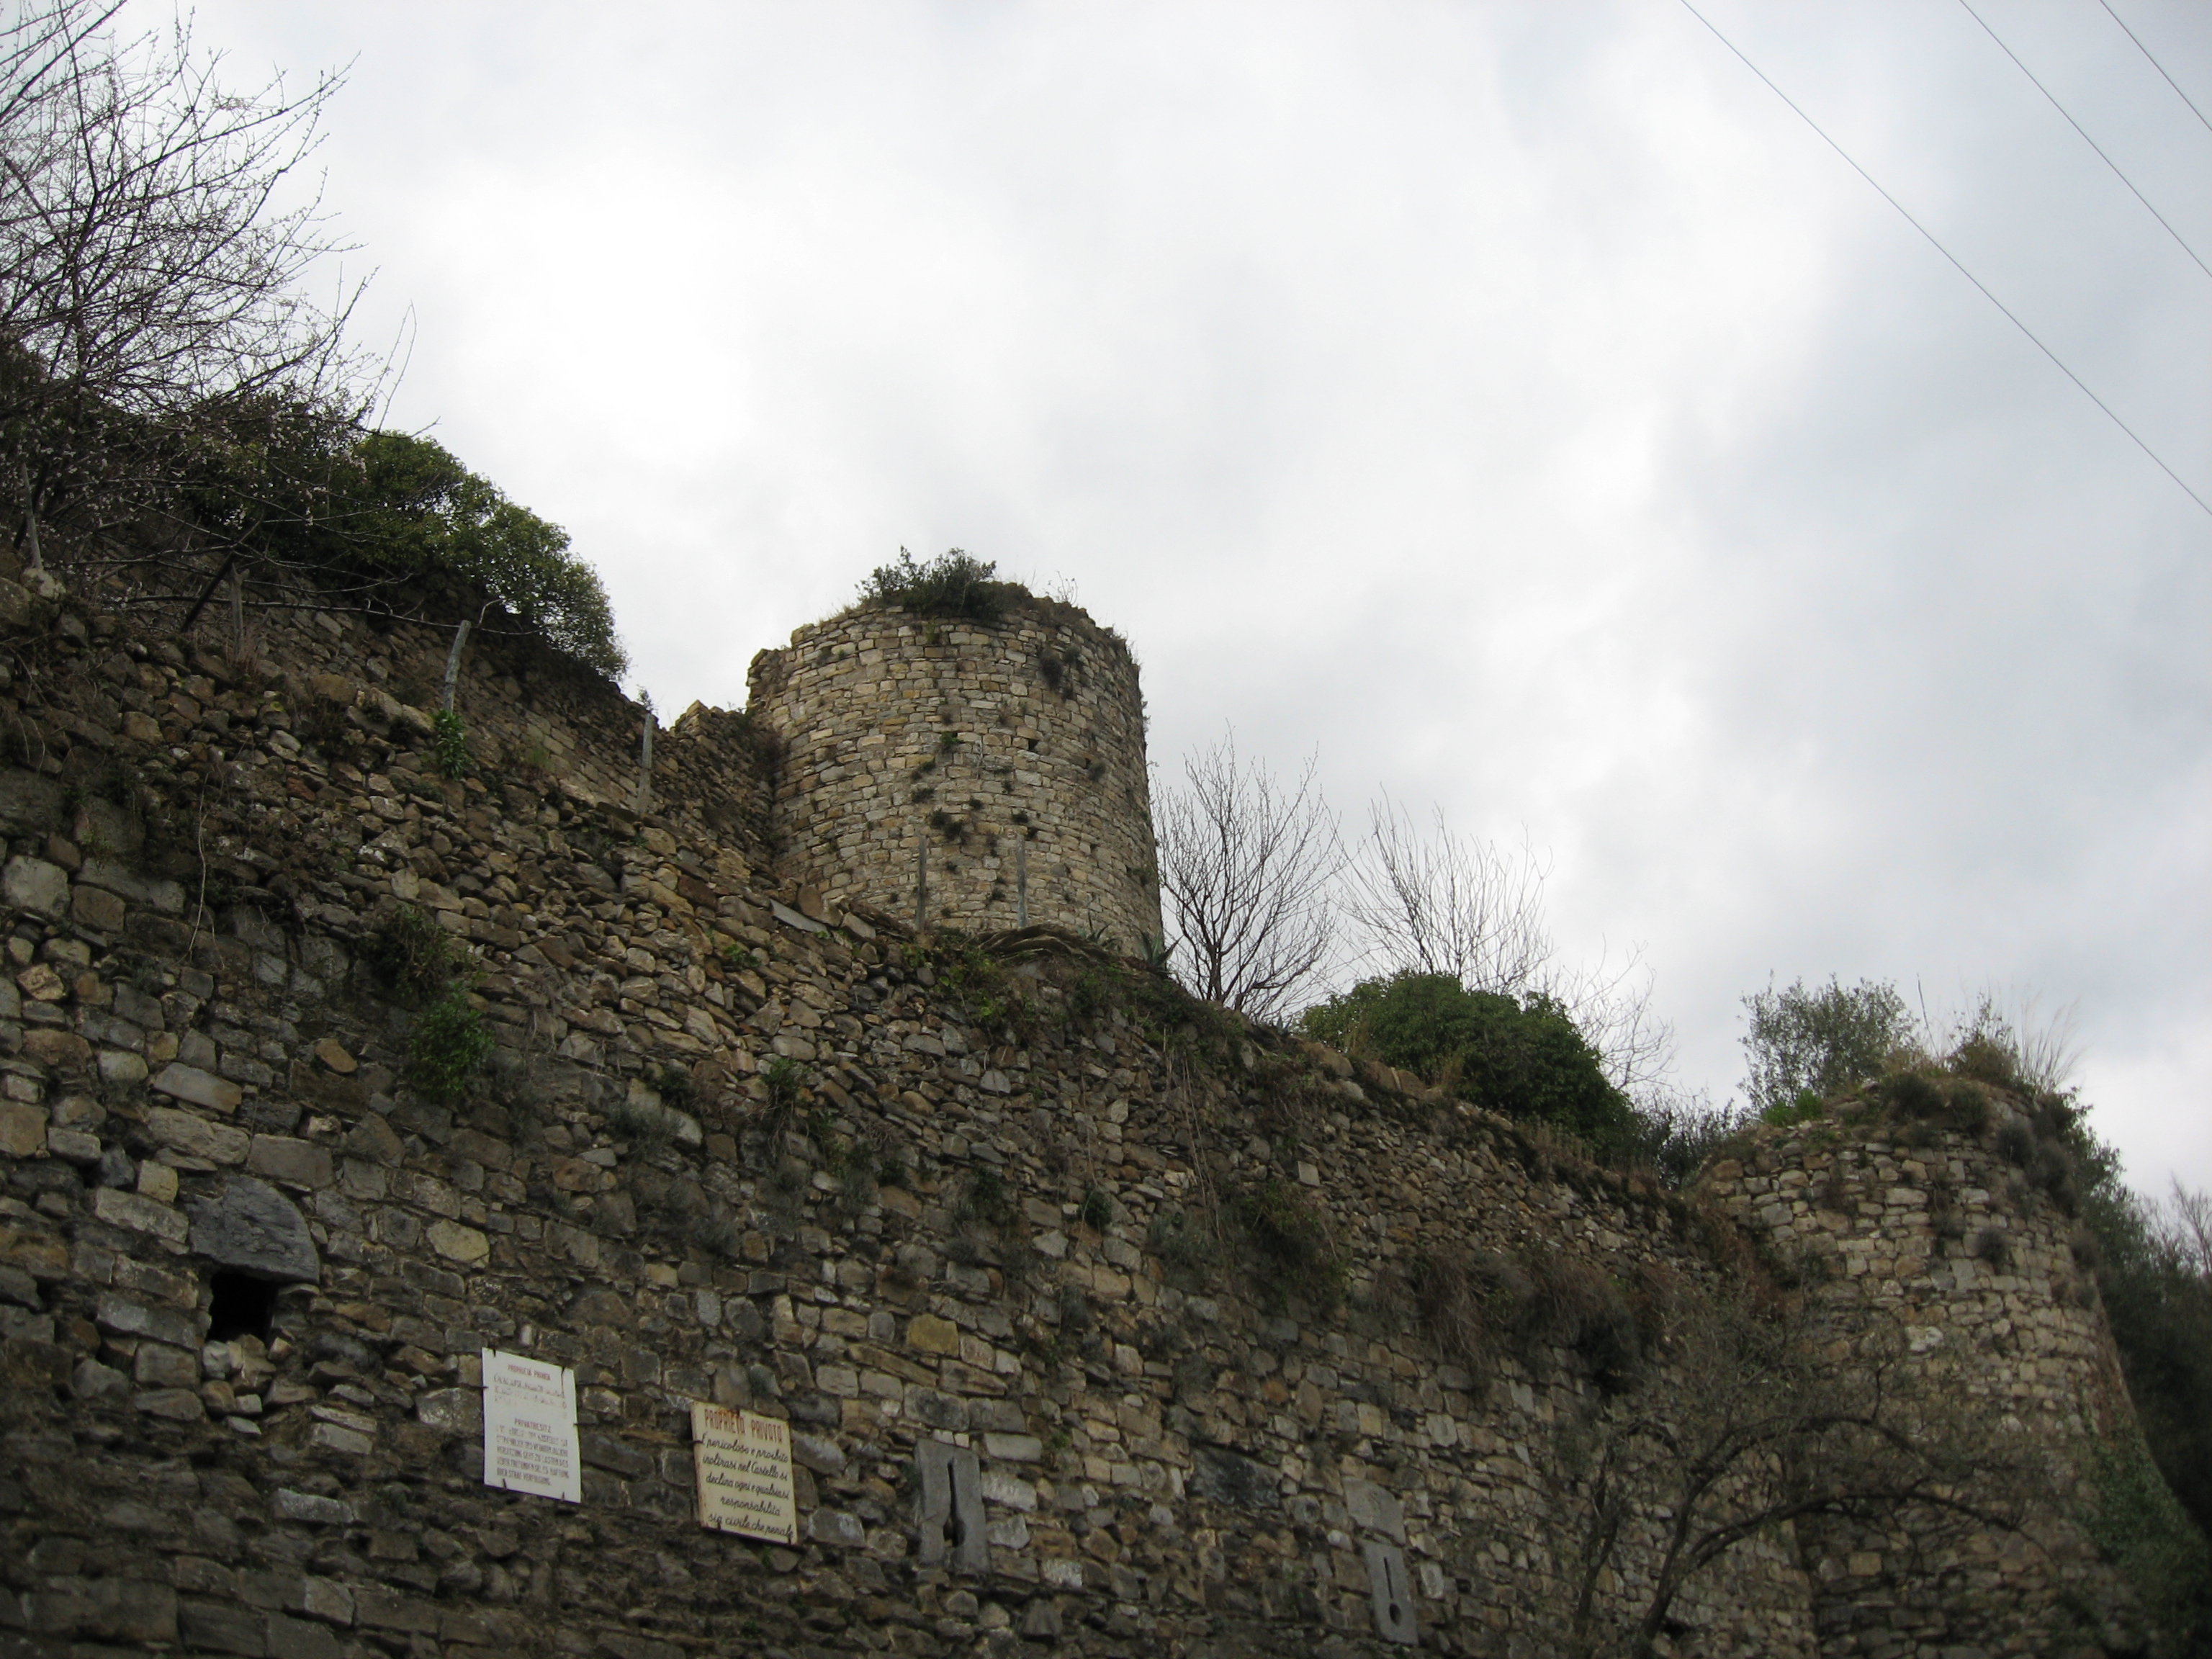 Castello di Pietralata (struttura di fortificazione, castello militare) - Vasia (IM)  (Basso Medioevo)